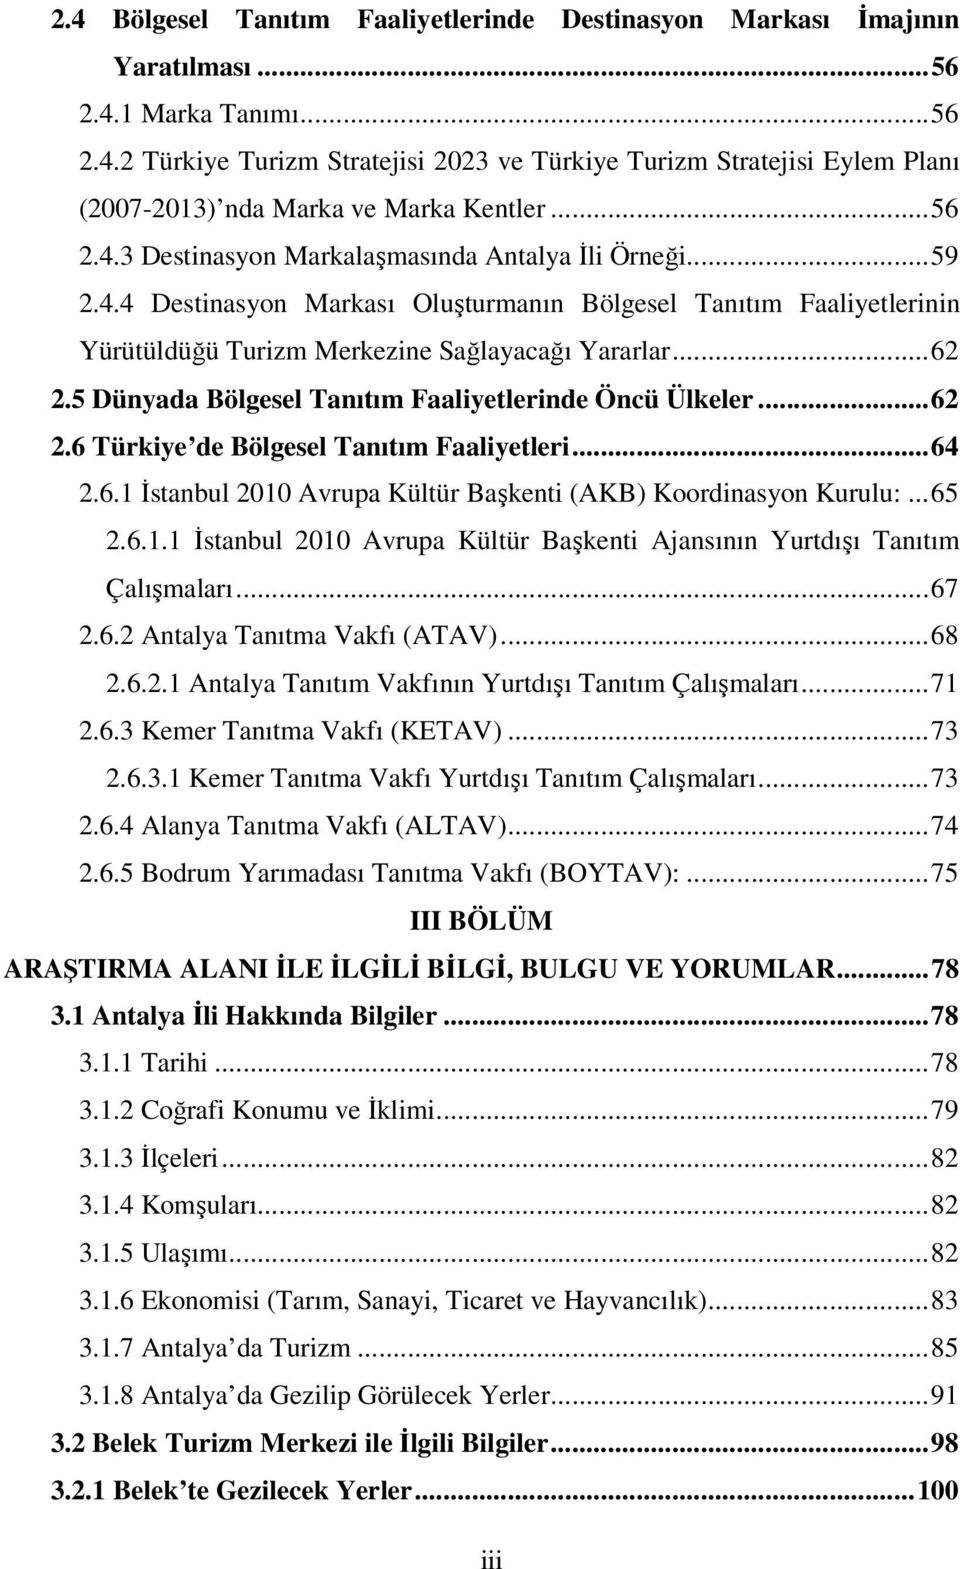 5 Dünyada Bölgesel Tanıtım Faaliyetlerinde Öncü Ülkeler...62 2.6 Türkiye de Bölgesel Tanıtım Faaliyetleri...64 2.6.1 İstanbul 2010 Avrupa Kültür Başkenti (AKB) Koordinasyon Kurulu:...65 2.6.1.1 İstanbul 2010 Avrupa Kültür Başkenti Ajansının Yurtdışı Tanıtım Çalışmaları.